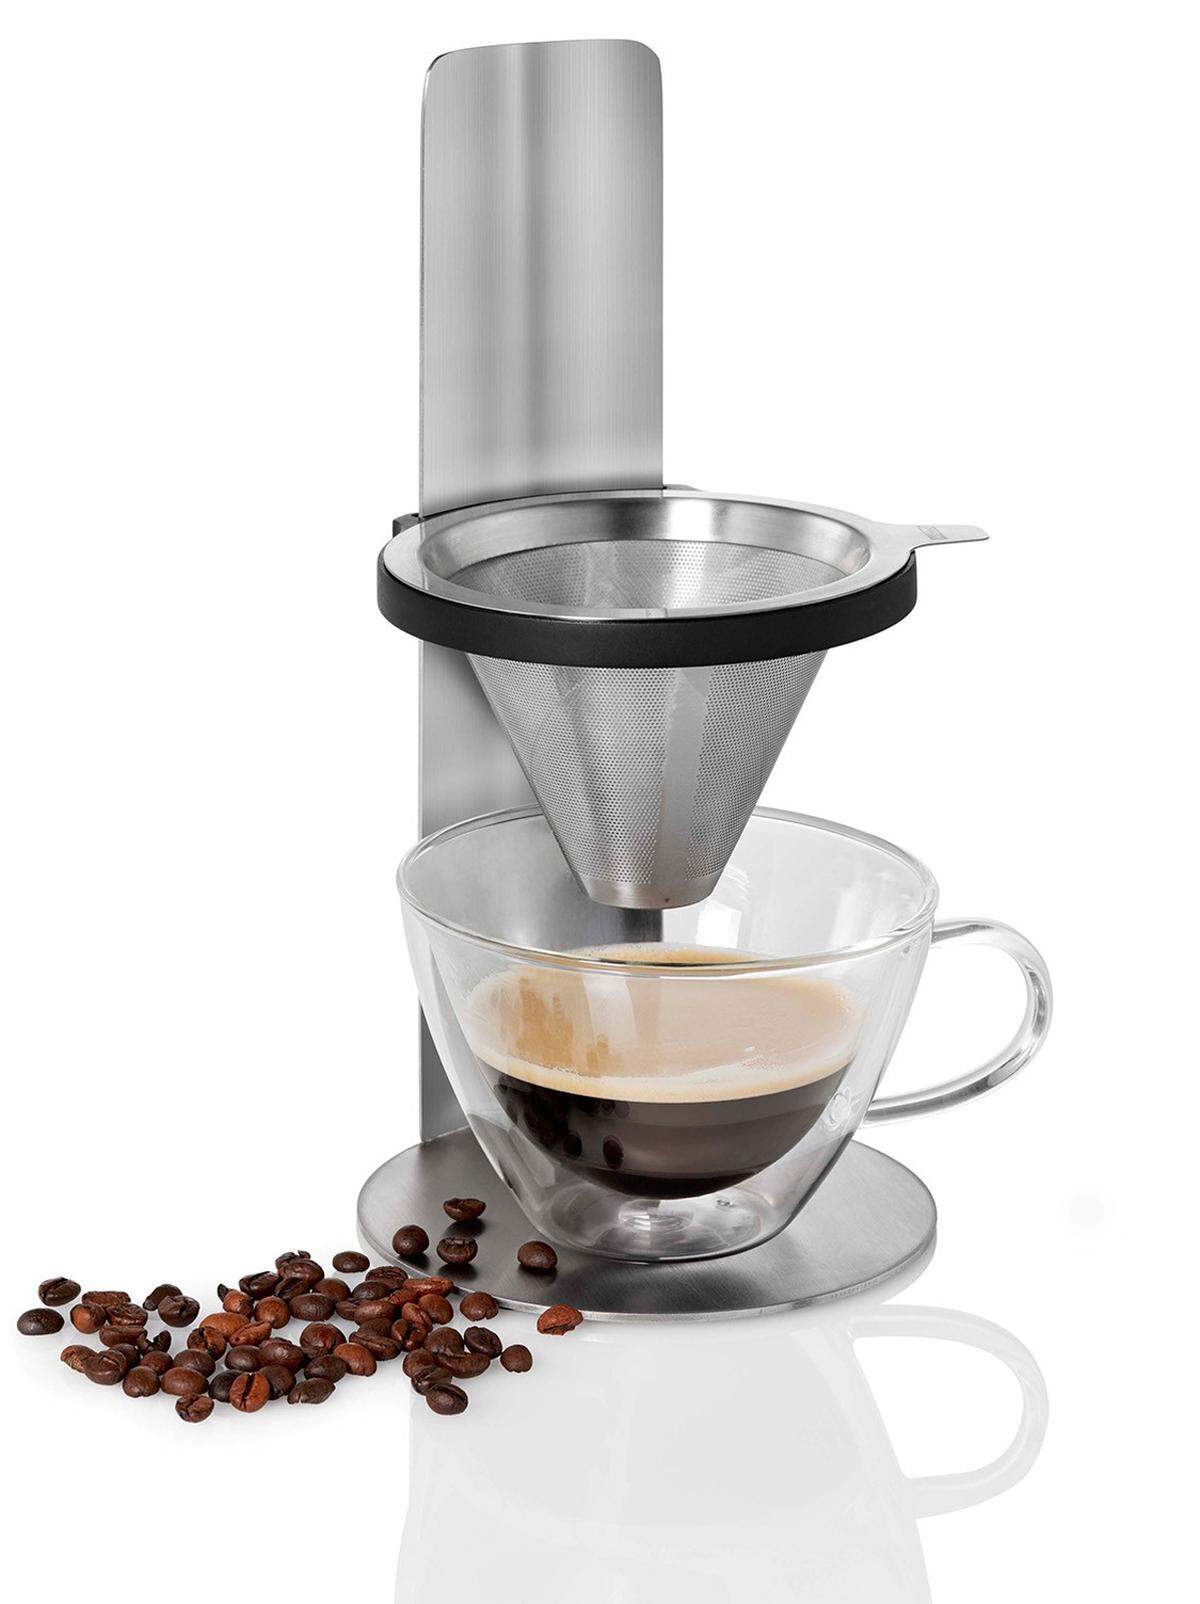 Kaffee geht immer: Der Kaffeebereiter Mr. Brew von AdHoc verfügt über einen geschmacksneutralen Permanent-Feinfilter. 39,90 Euro, erhältlich etwa bei Cuisinarum.